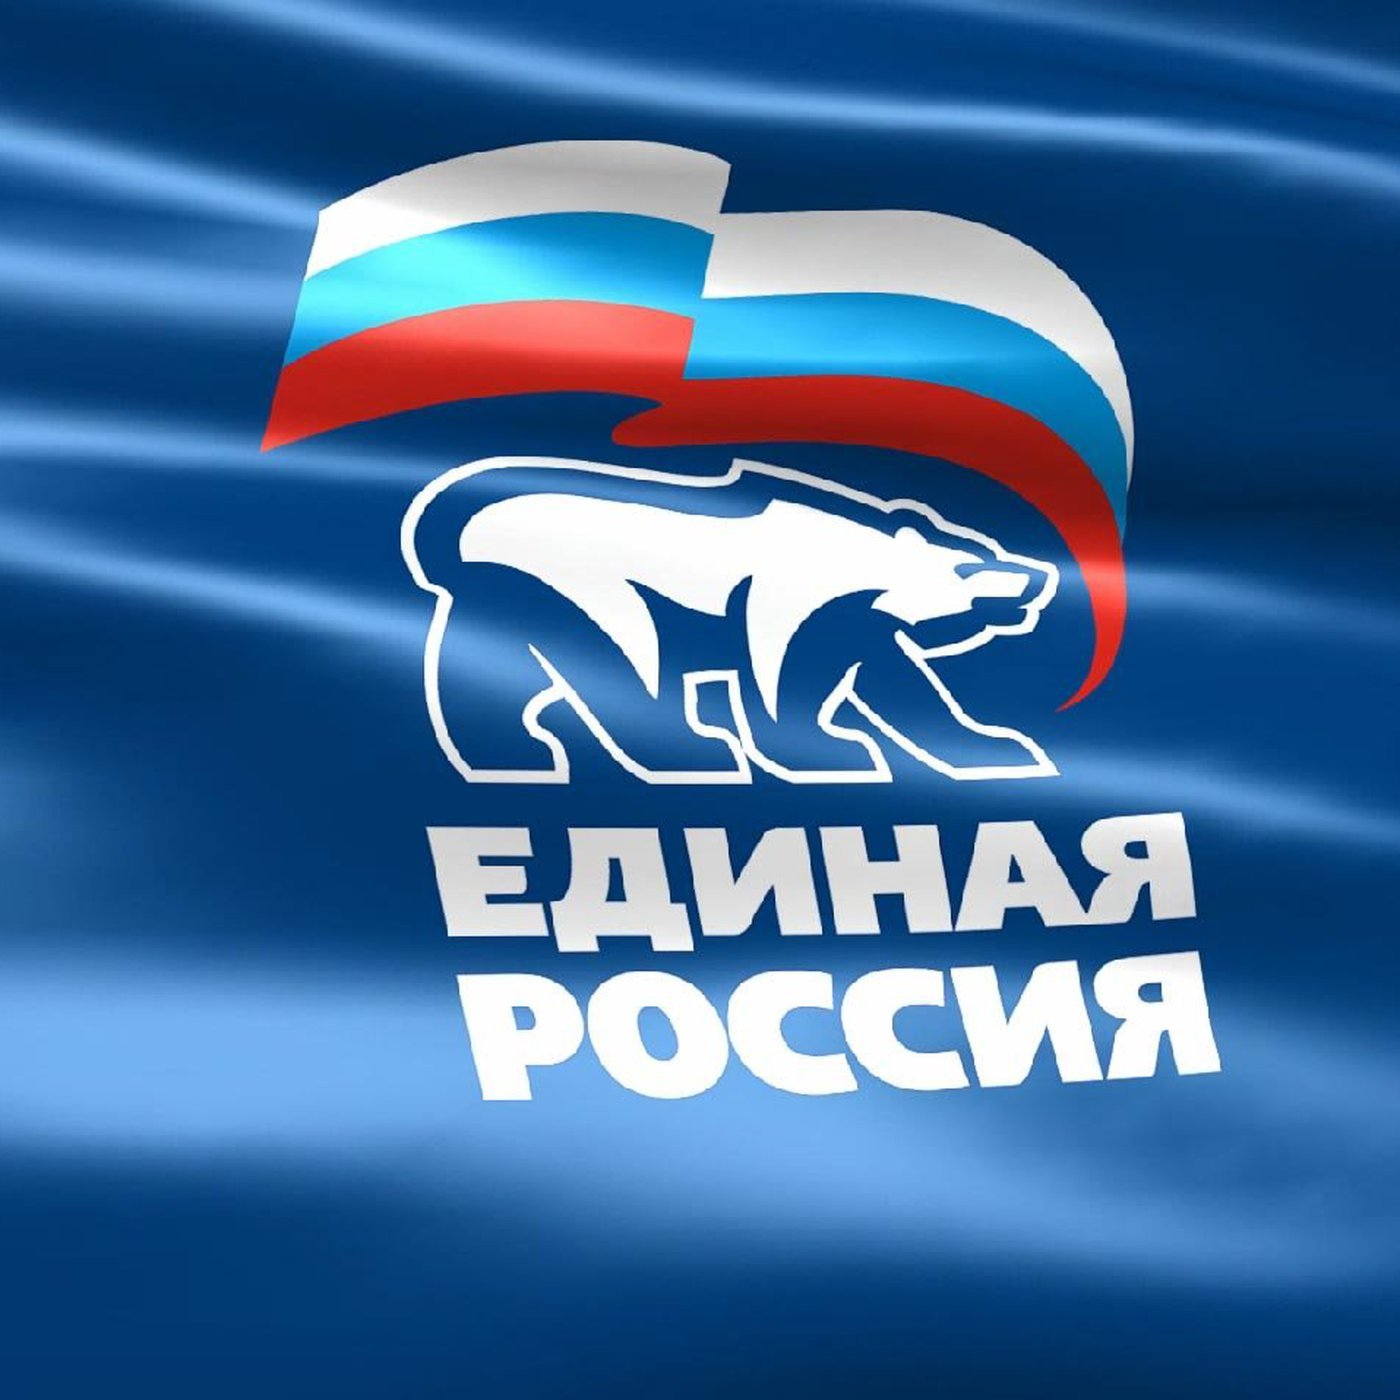 Единая Россия лого